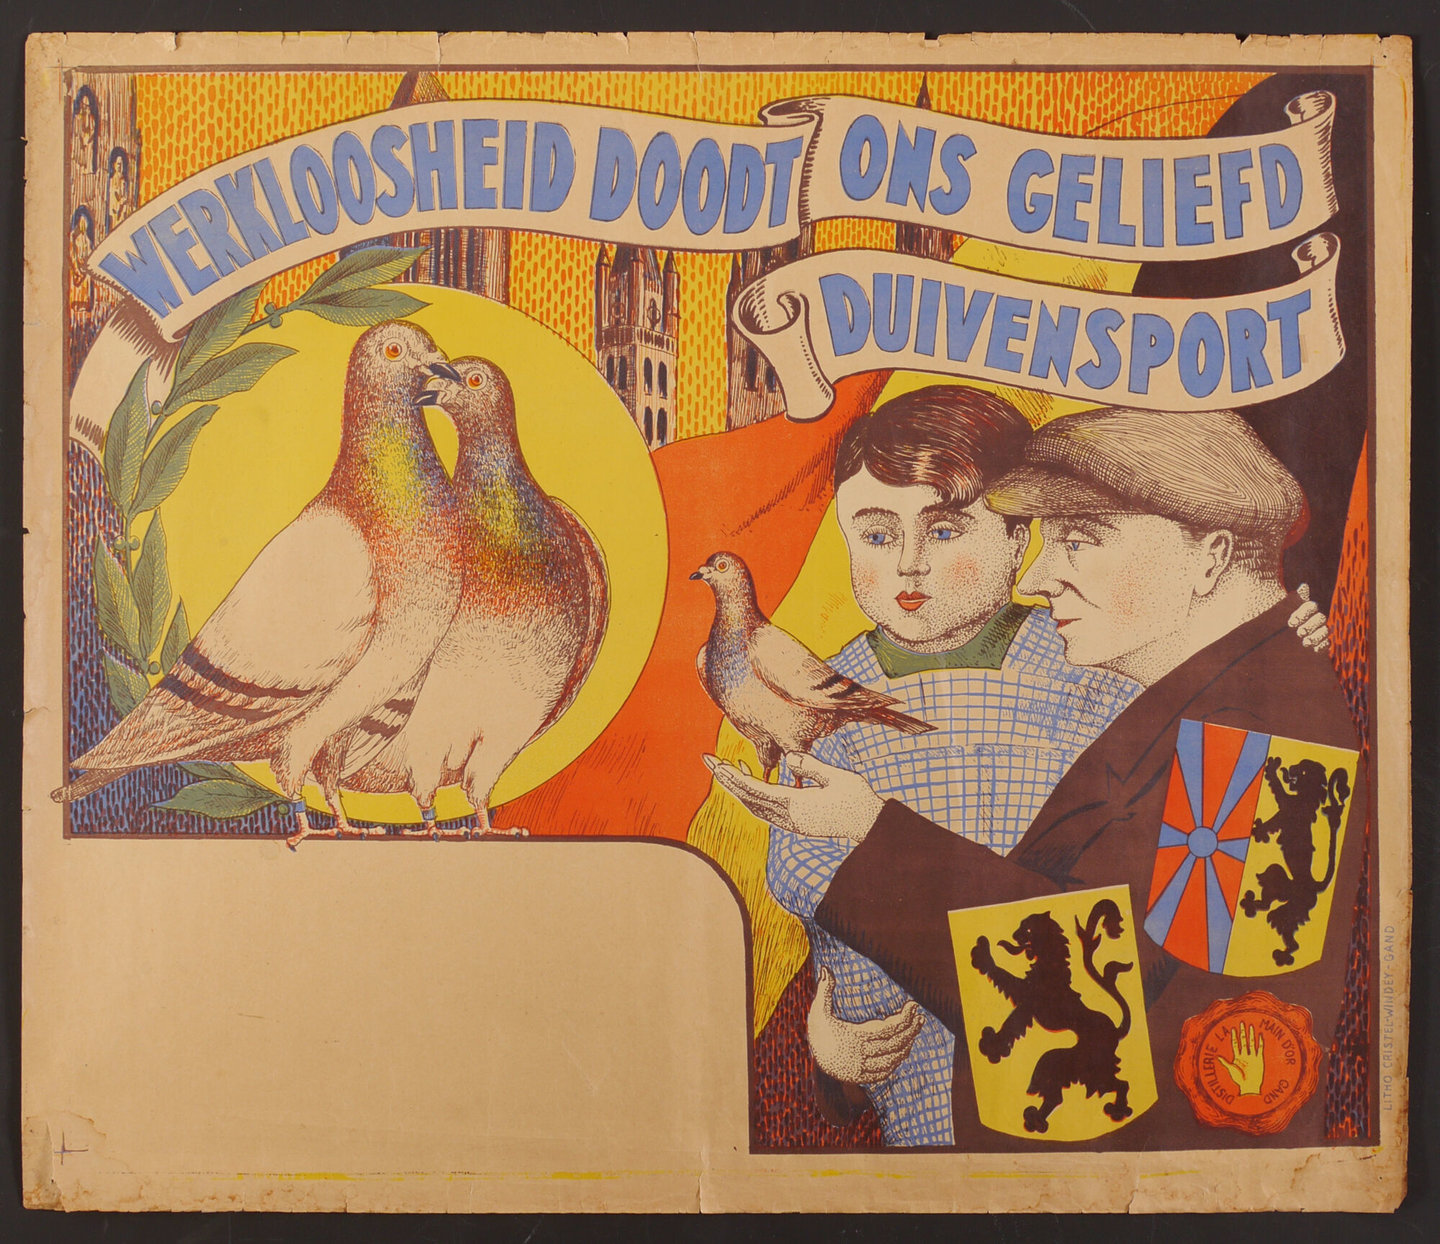 Affiche met als titel 'Werkloosheid doodt ons geliefd duivensport'